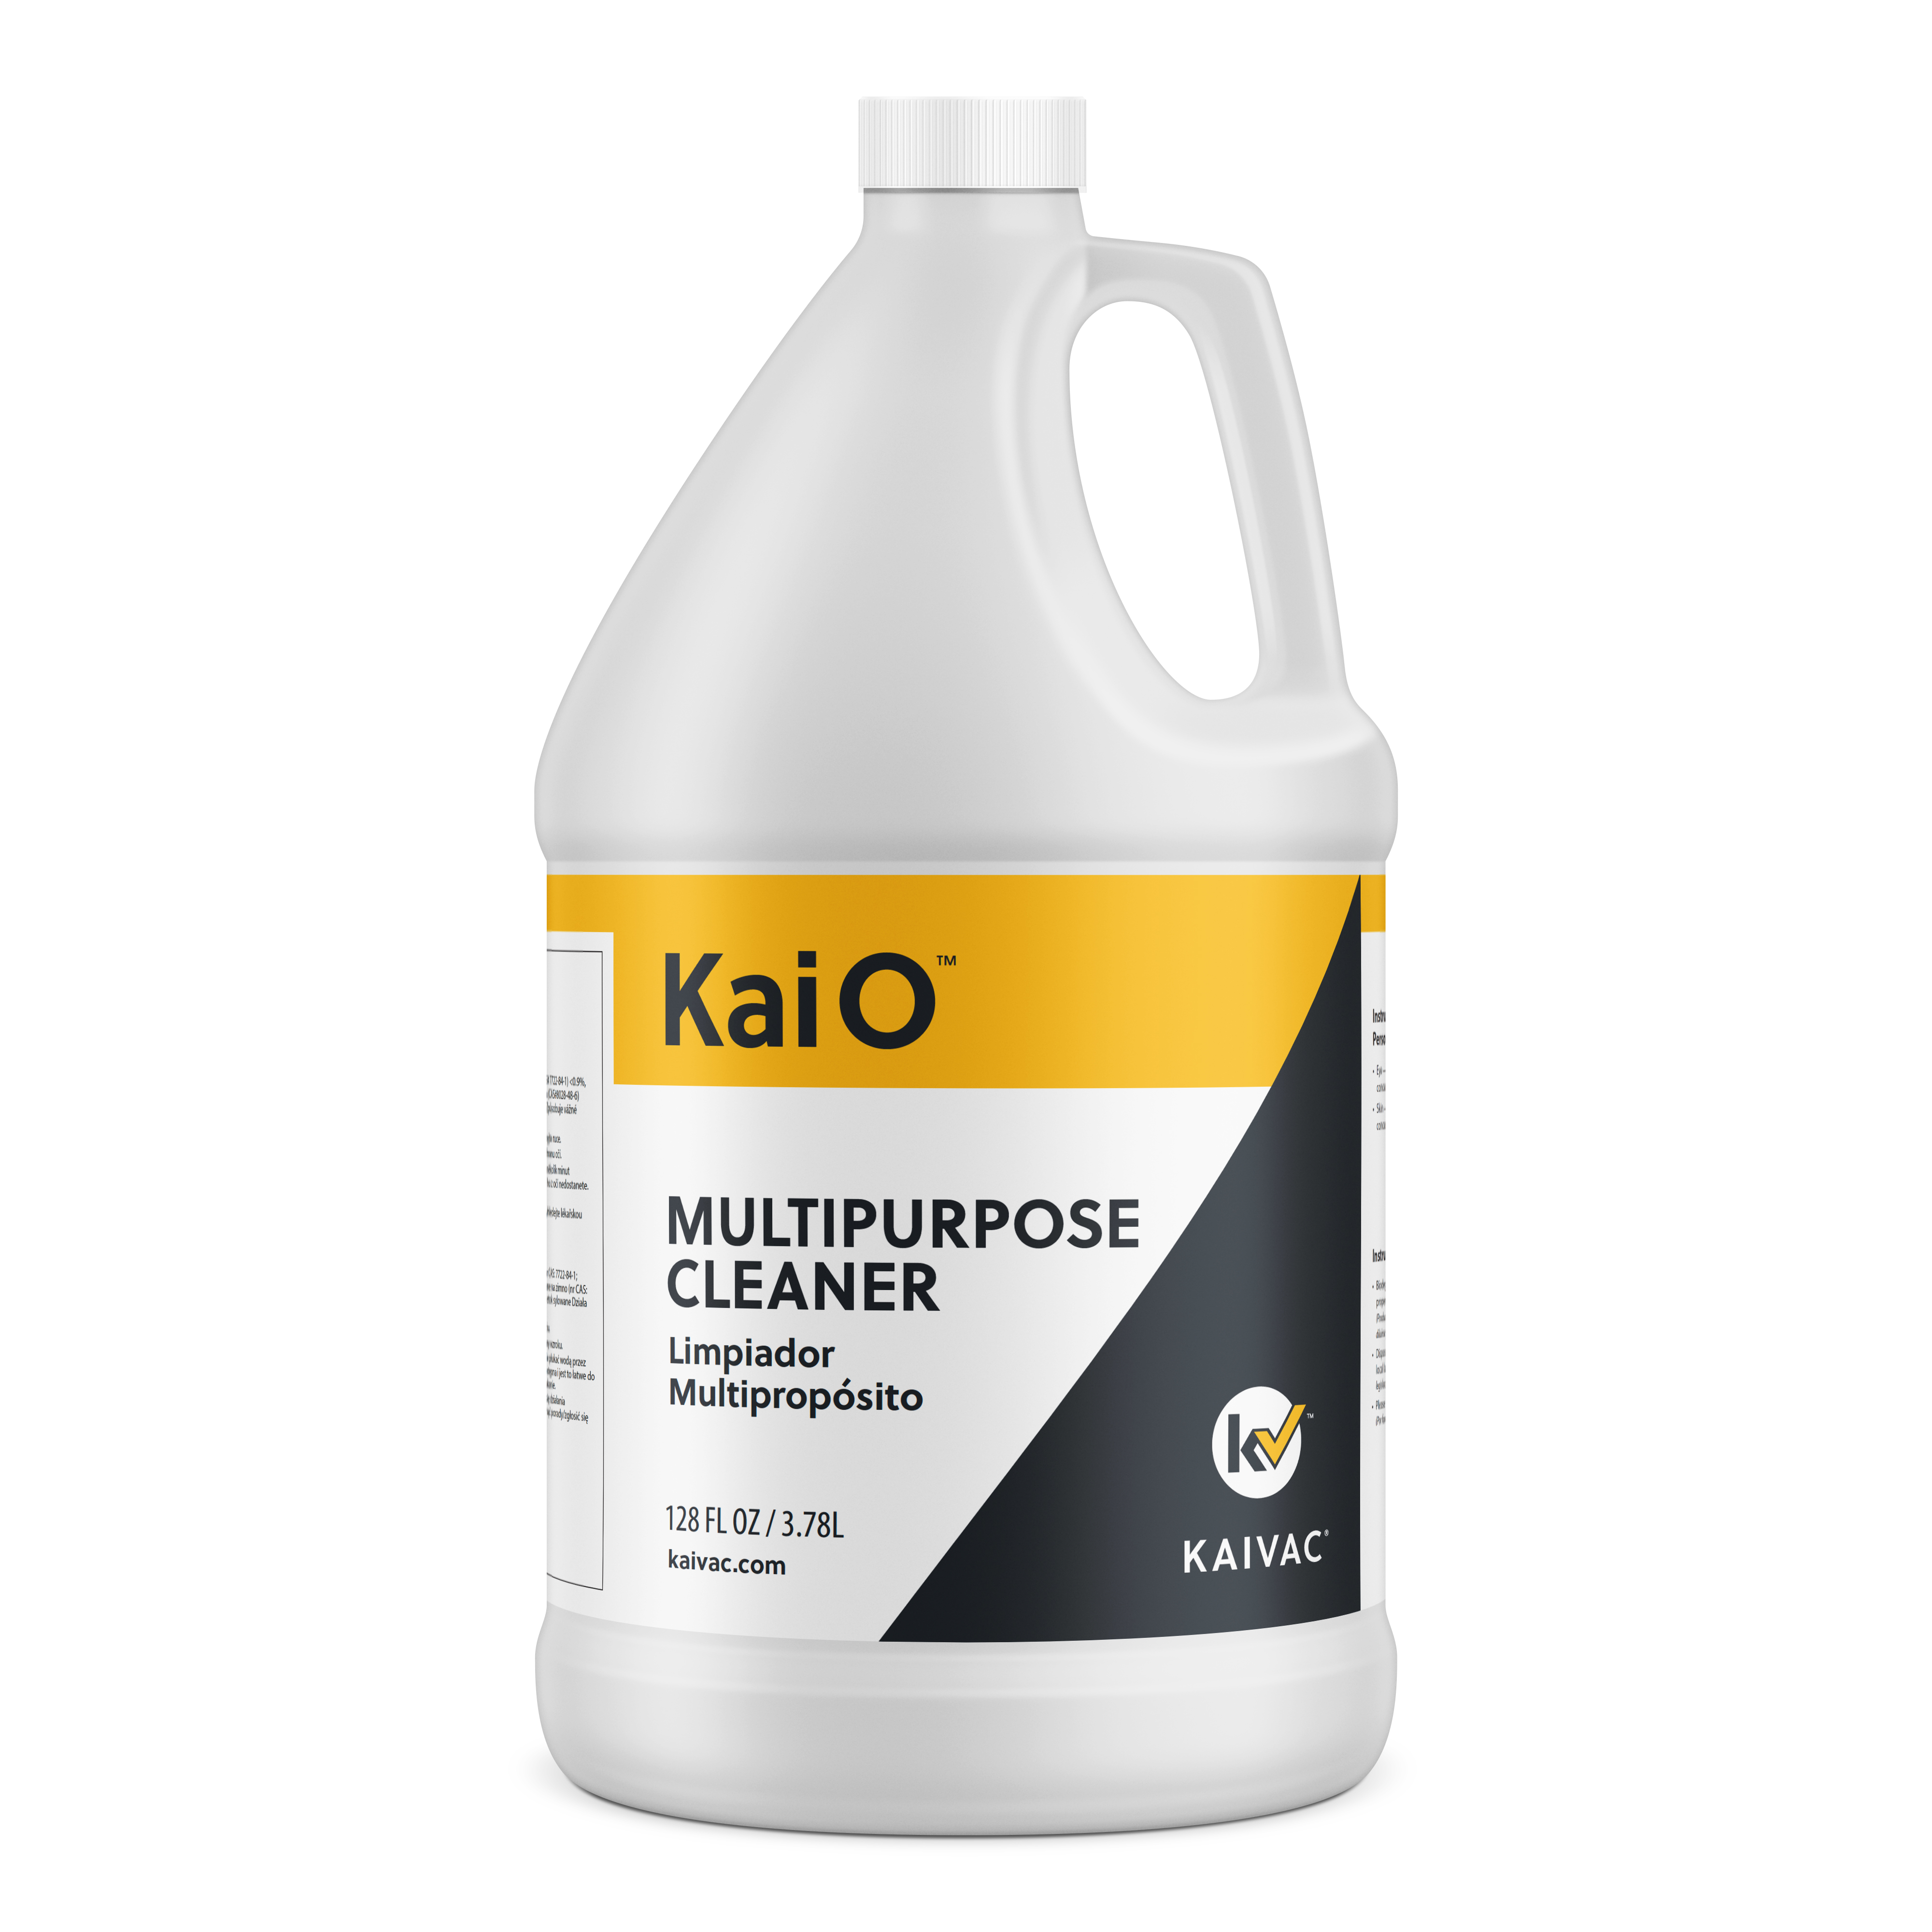 Kaio Multipurpose Cleaner